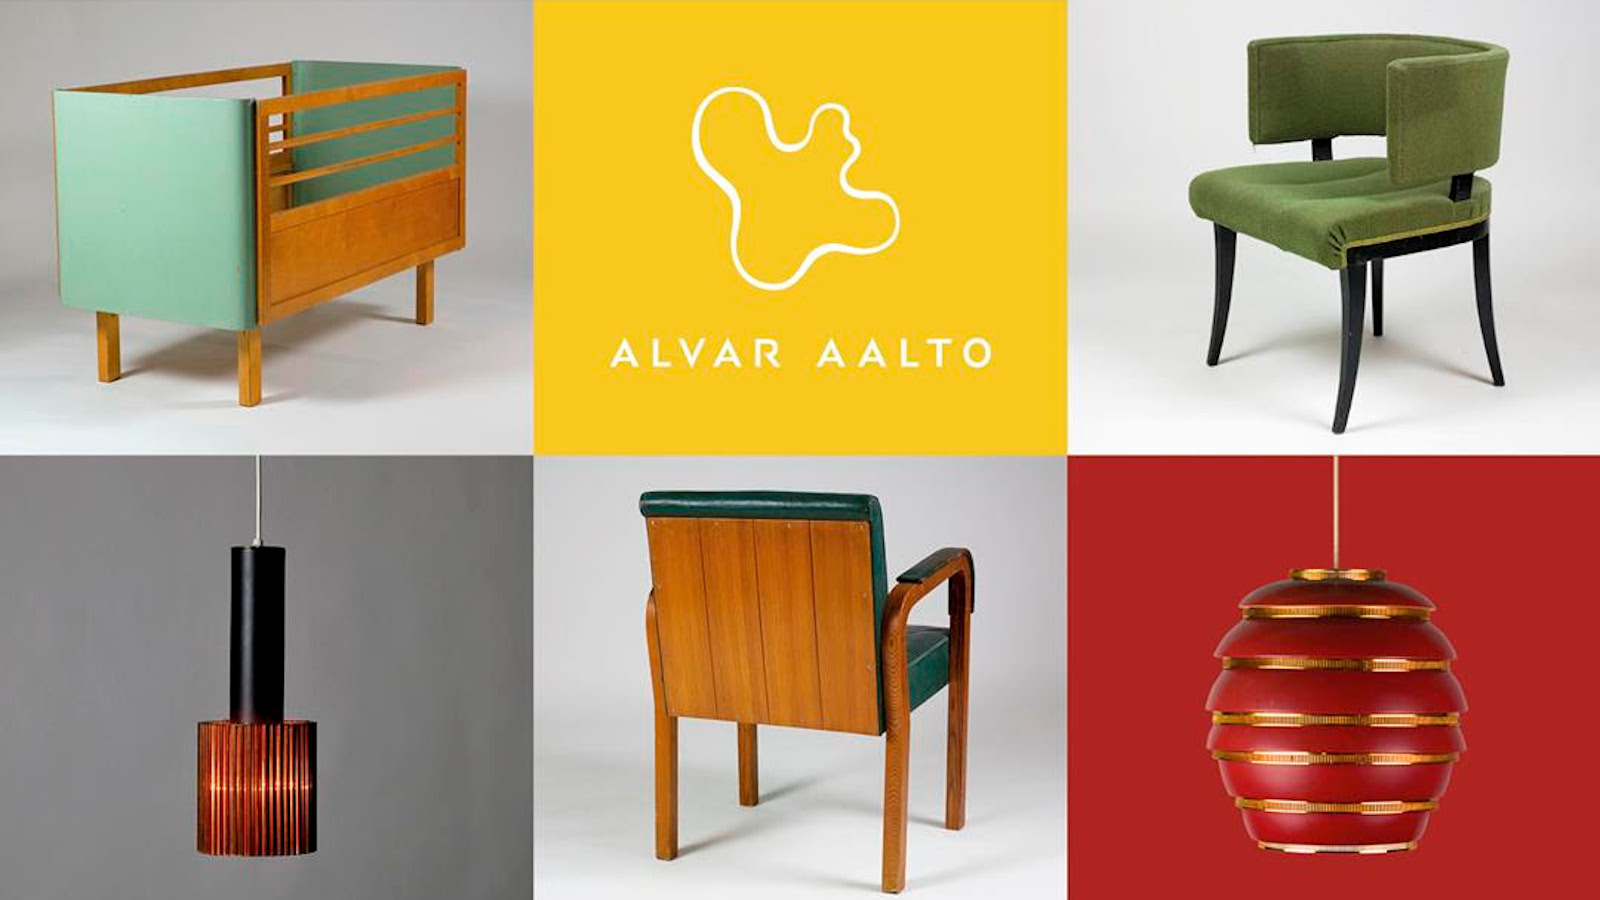 Kuva on jaettu kuuteen osaan, joissa on Alvar Aallon suunnittelema nojatuoli, matala hylly, kaksi lamppua ja keskellä keltaisella pohjalla teksti Alvar Aalto ja Aallon maljakon muoto ohutviivapiirroksena.